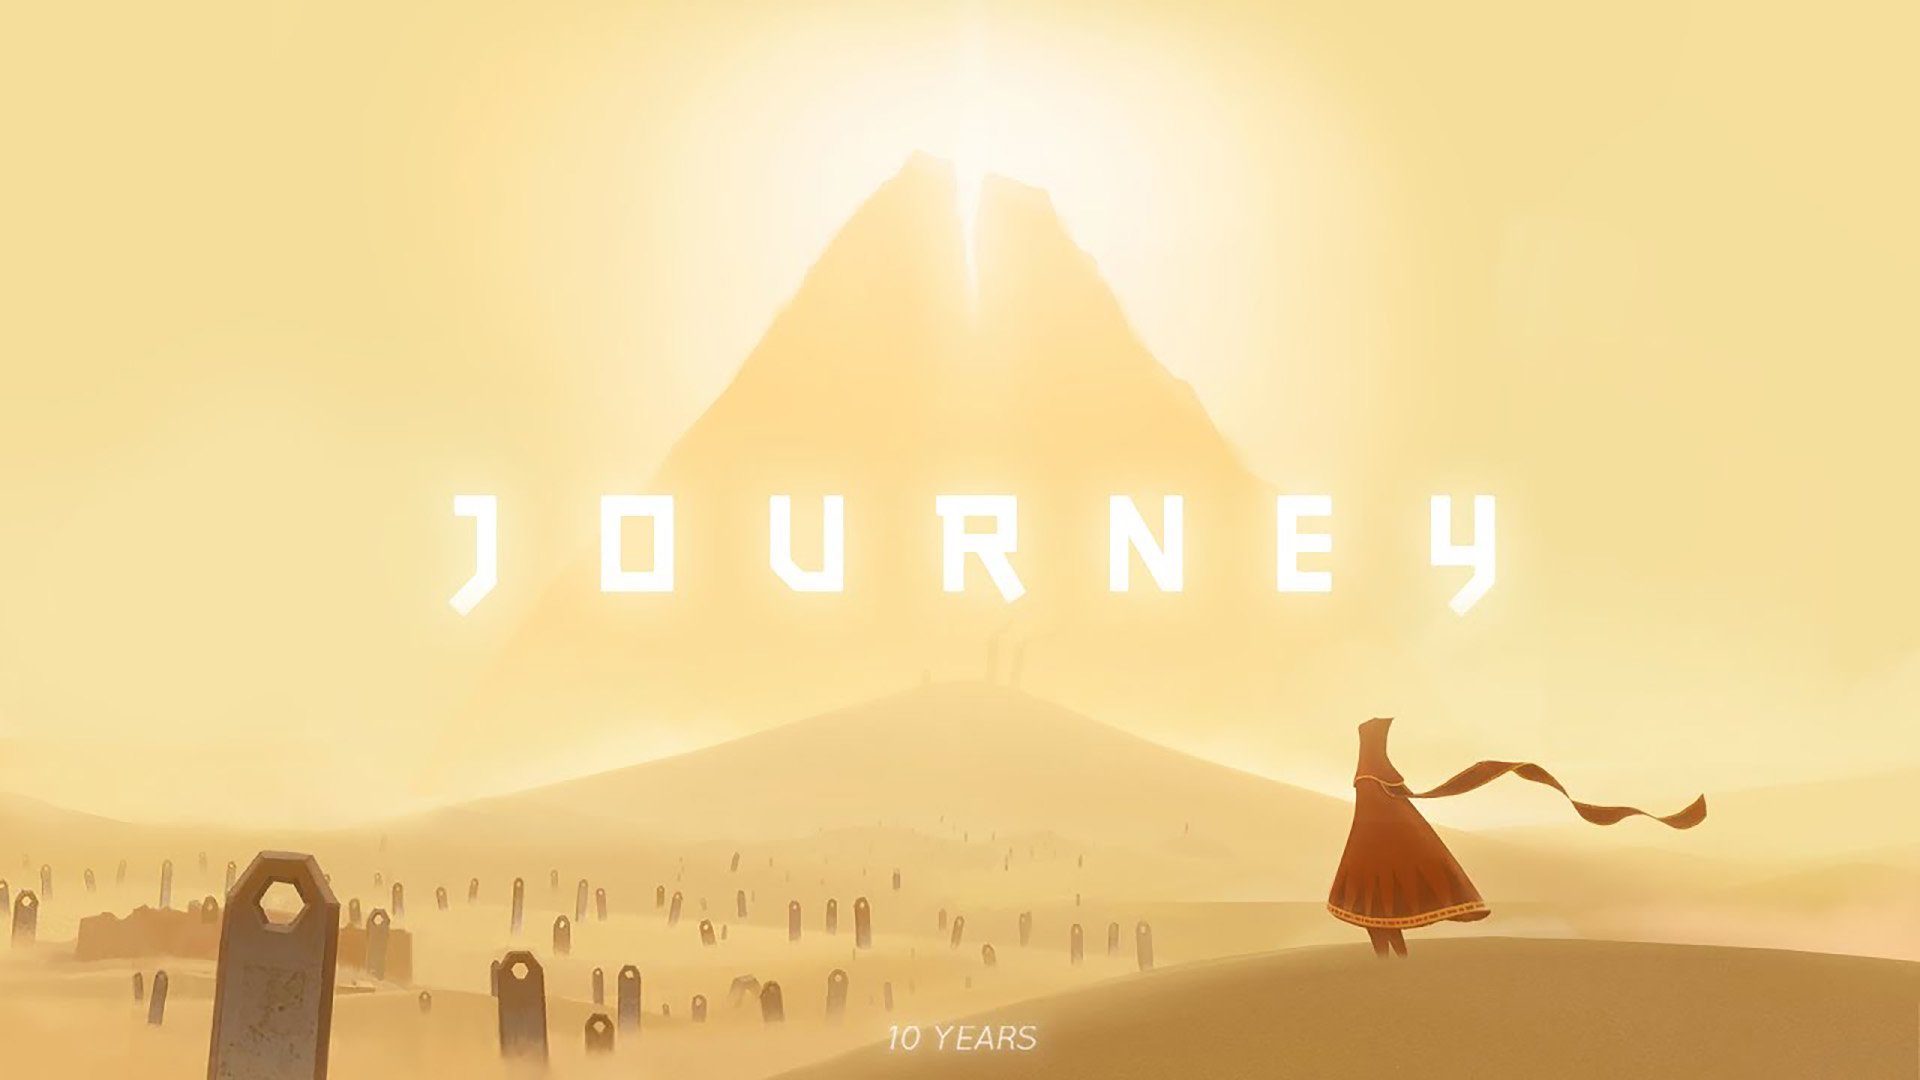 May journey. Journey игра. Journey (игра, 2012). Путешествие игра Journey. Journey / путешествие [ps3].